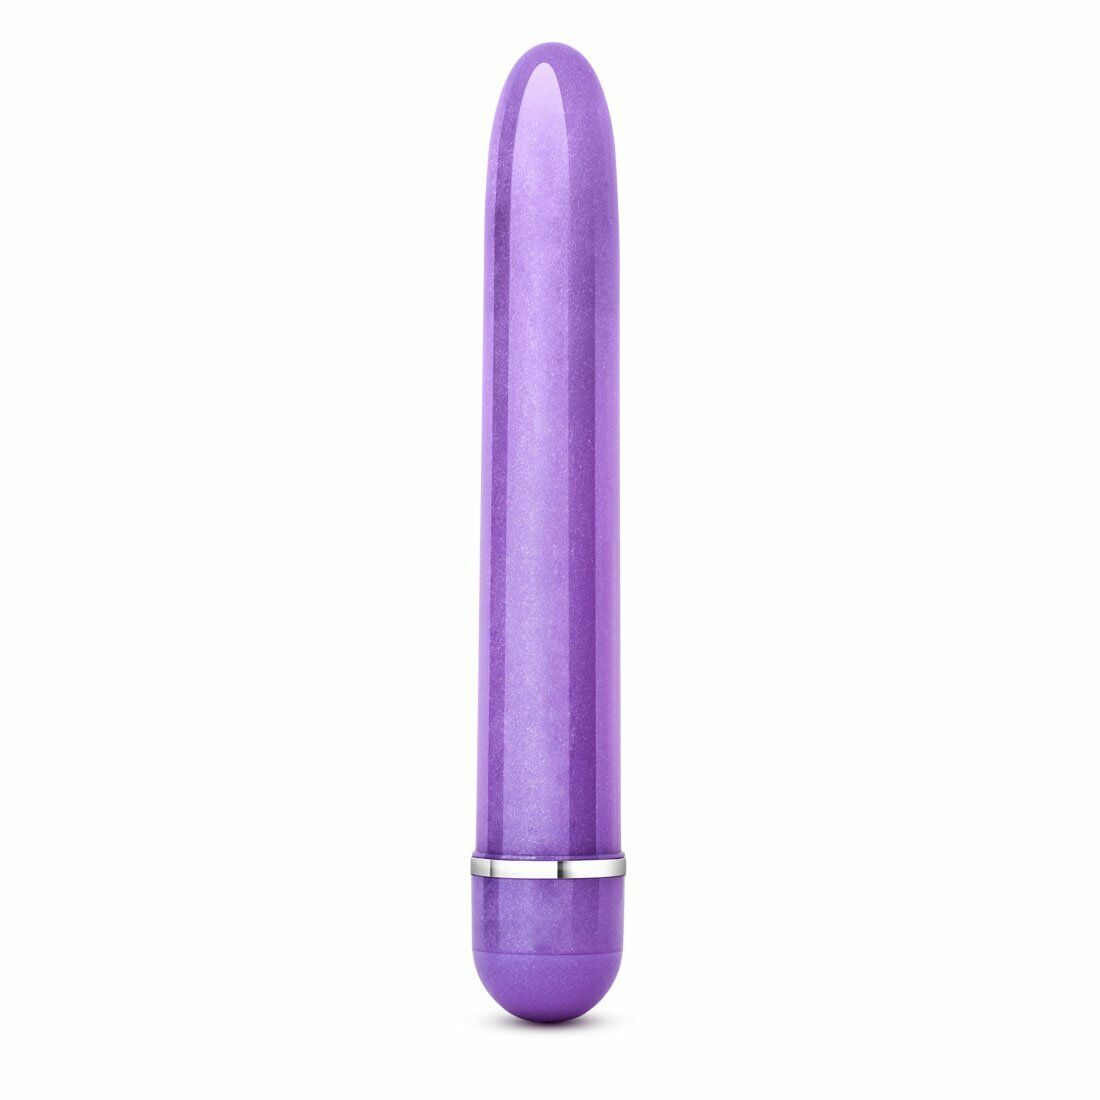 Slim Slender Waterproof Anal Clit G-spot Vibe Vibrator Sex-toys for Women